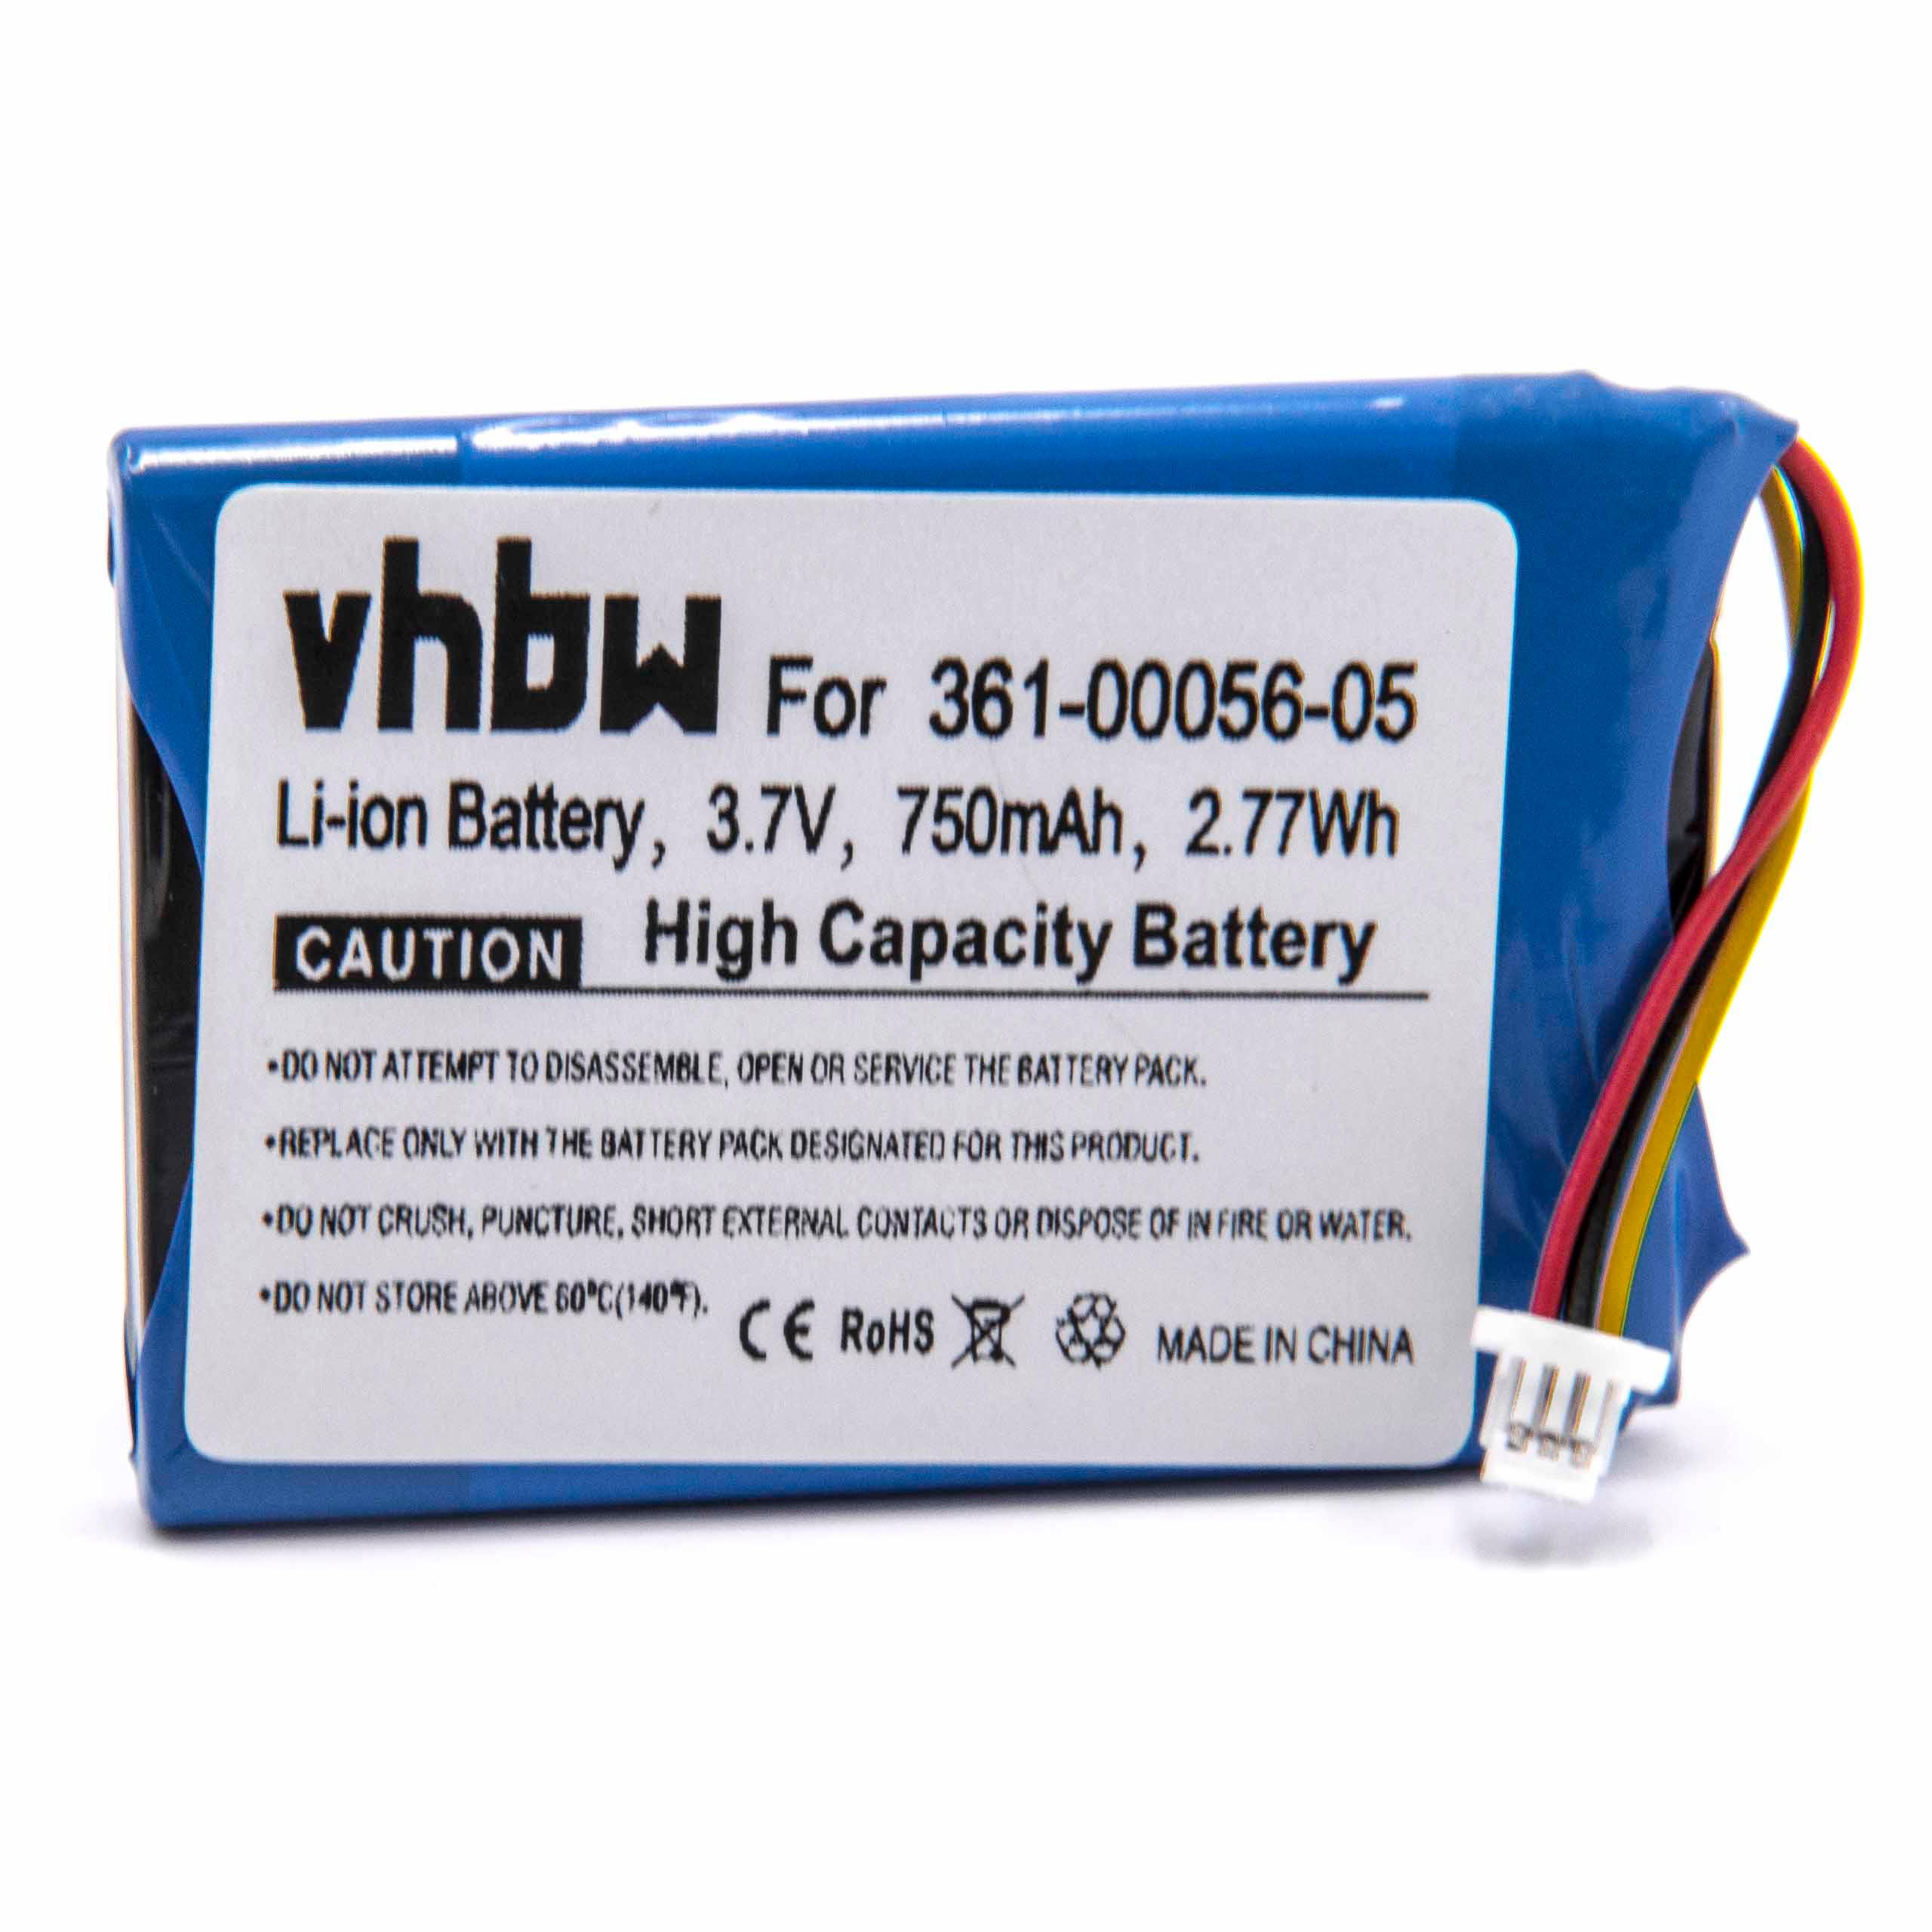 Batterie remplace Garmin 361-00056-11, 361-00056-05 pour navigation GPS - 750mAh 3,7V Li-ion